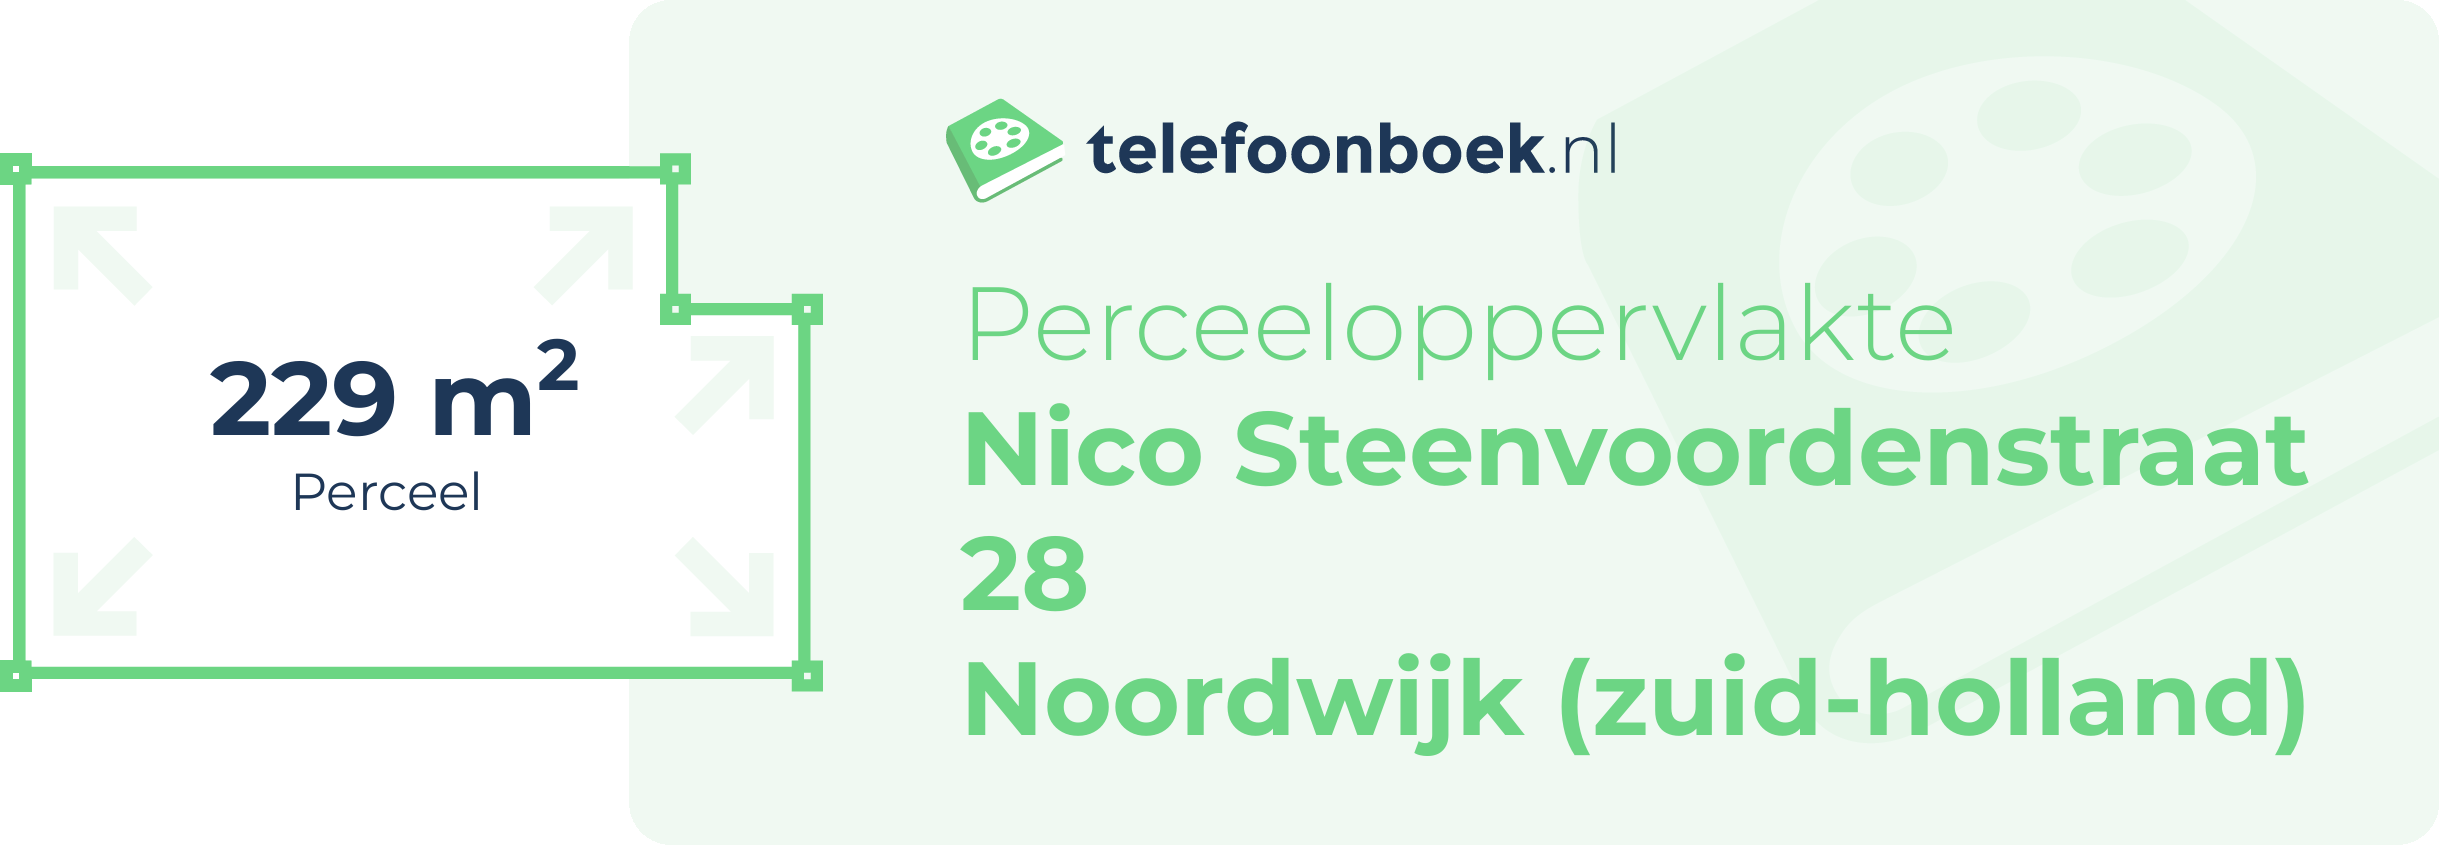 Perceeloppervlakte Nico Steenvoordenstraat 28 Noordwijk (Zuid-Holland)